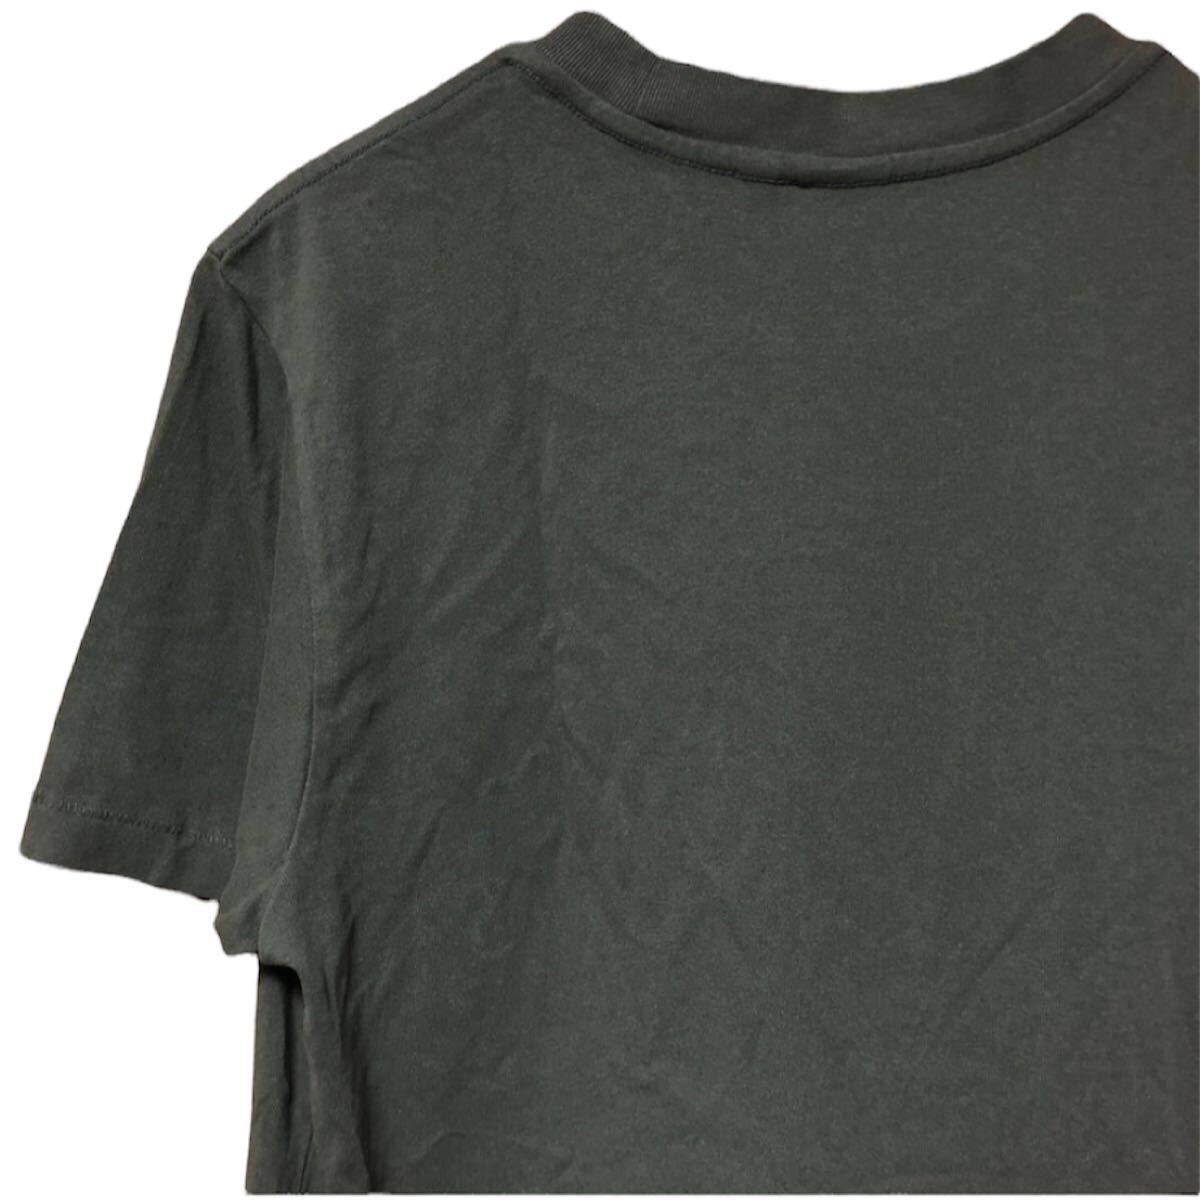 G-STAR RAW ジースターロゥ Tシャツ シンプル センターロゴ カーキ S size